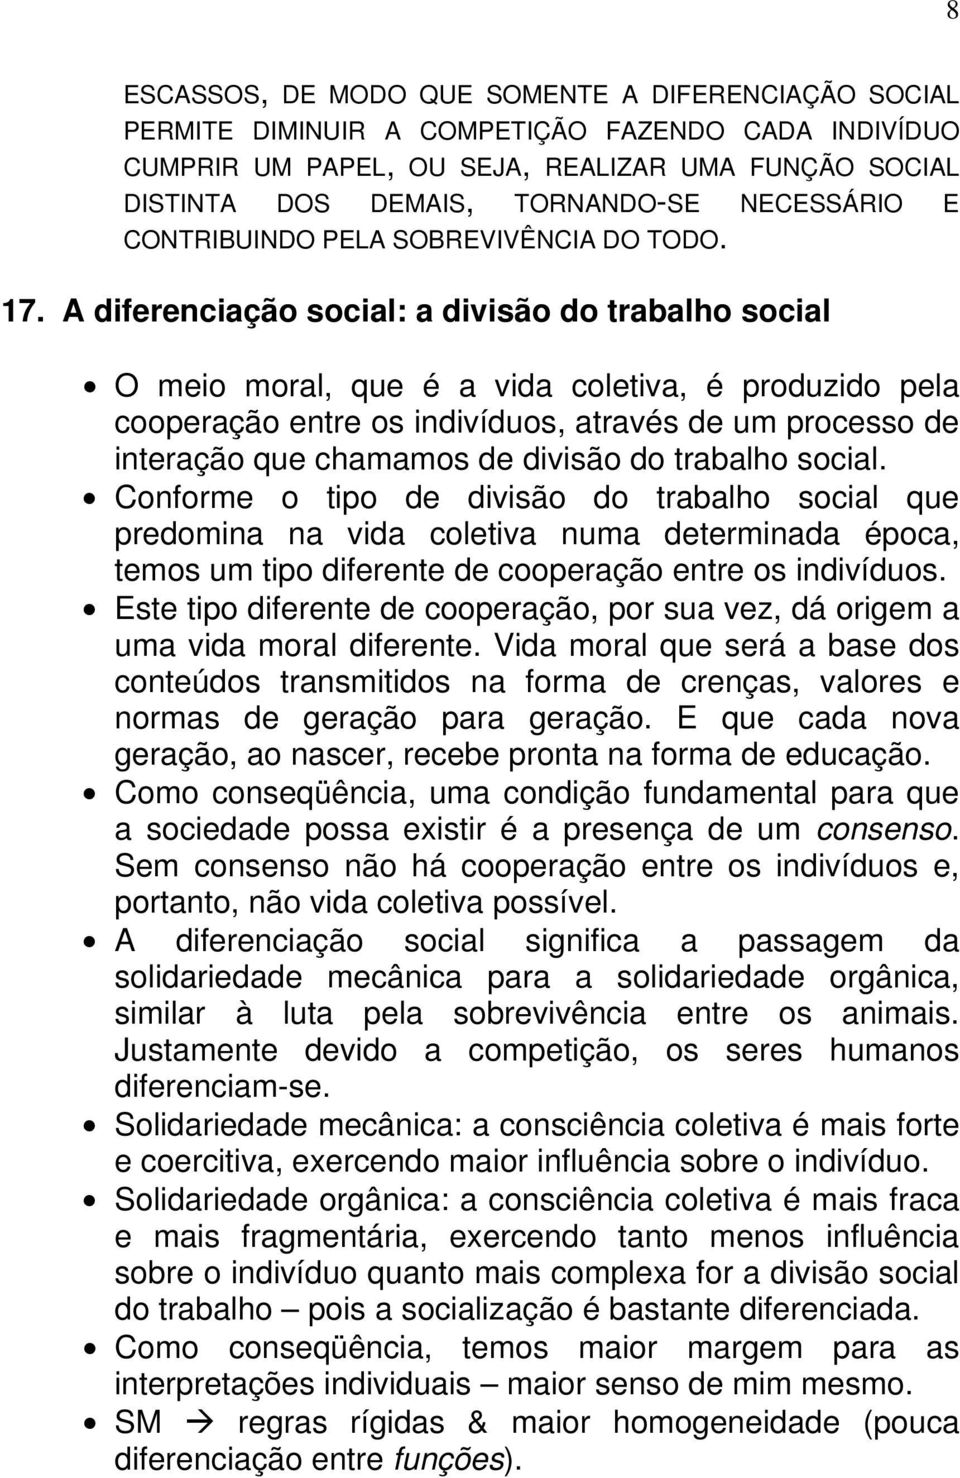 A diferenciação social: a divisão do trabalho social O meio moral, que é a vida coletiva, é produzido pela cooperação entre os indivíduos, através de um processo de interação que chamamos de divisão